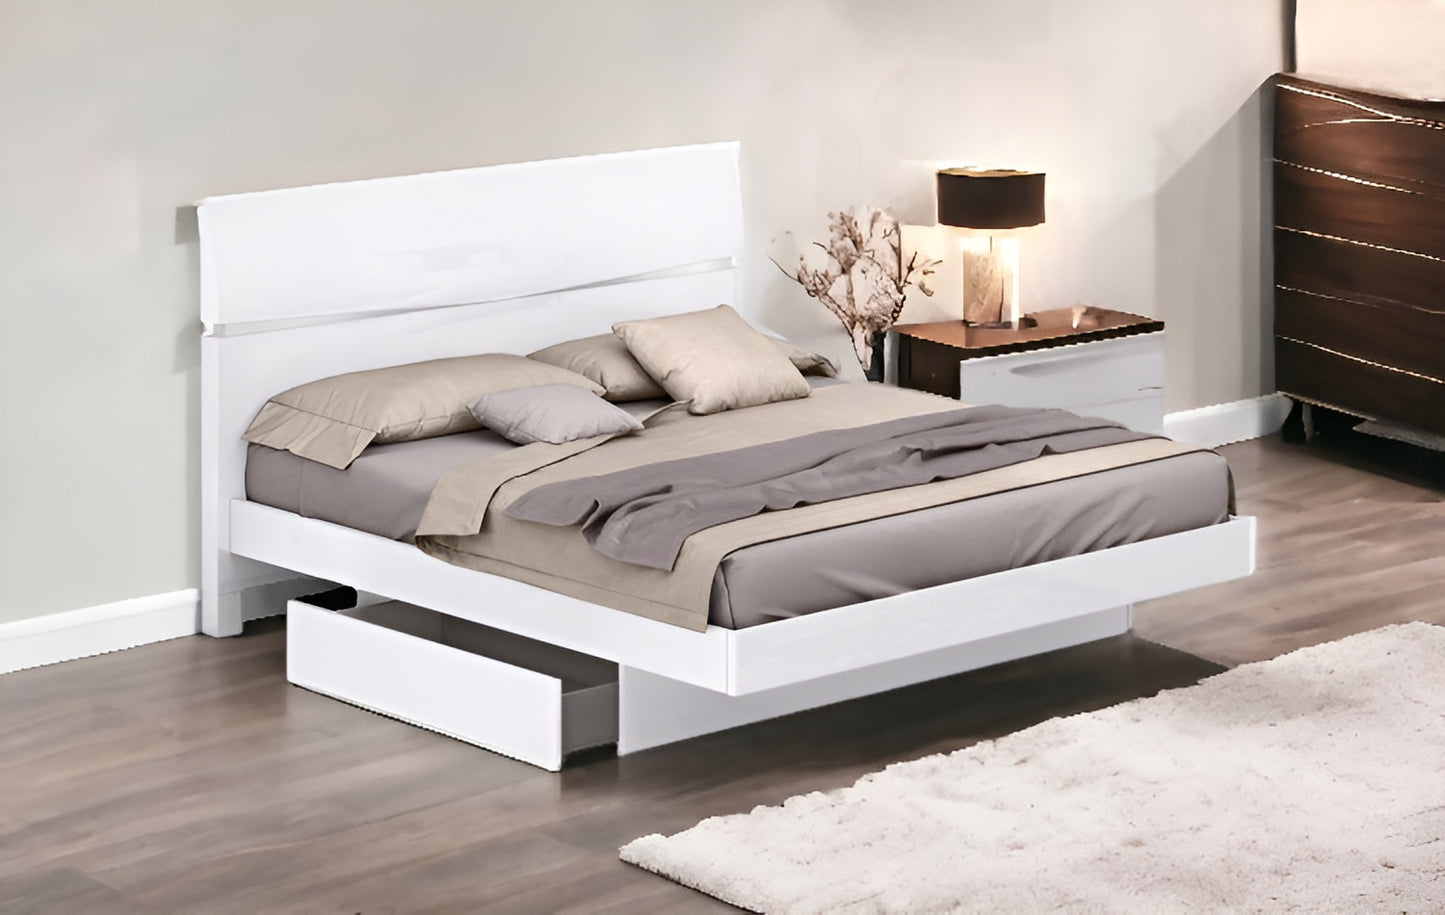 80'" X 60'"  X 42.5'" Modern Queen White High Gloss Bed